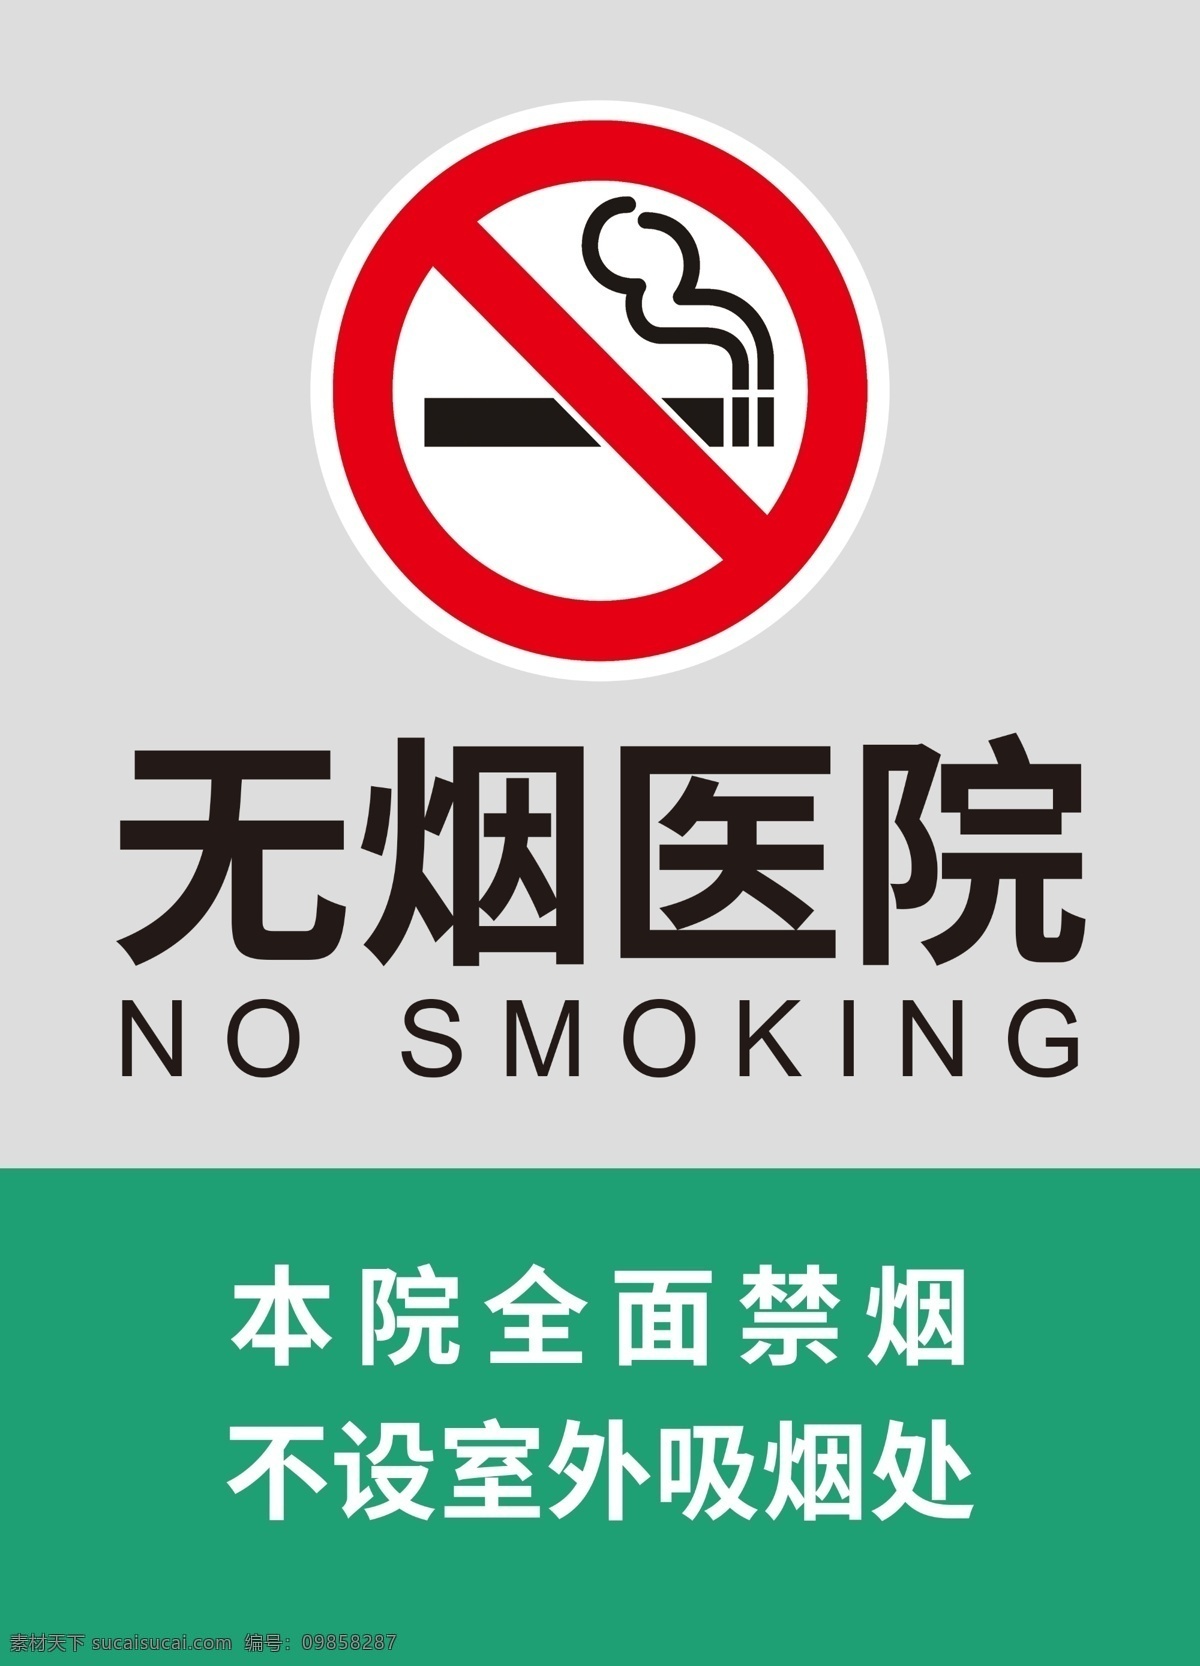 无烟医院 禁烟指示牌 禁烟 指示牌 公共场所禁烟 二手烟 禁止吸烟 请勿吸烟 标识牌 科室牌 健康 公益 医院公告